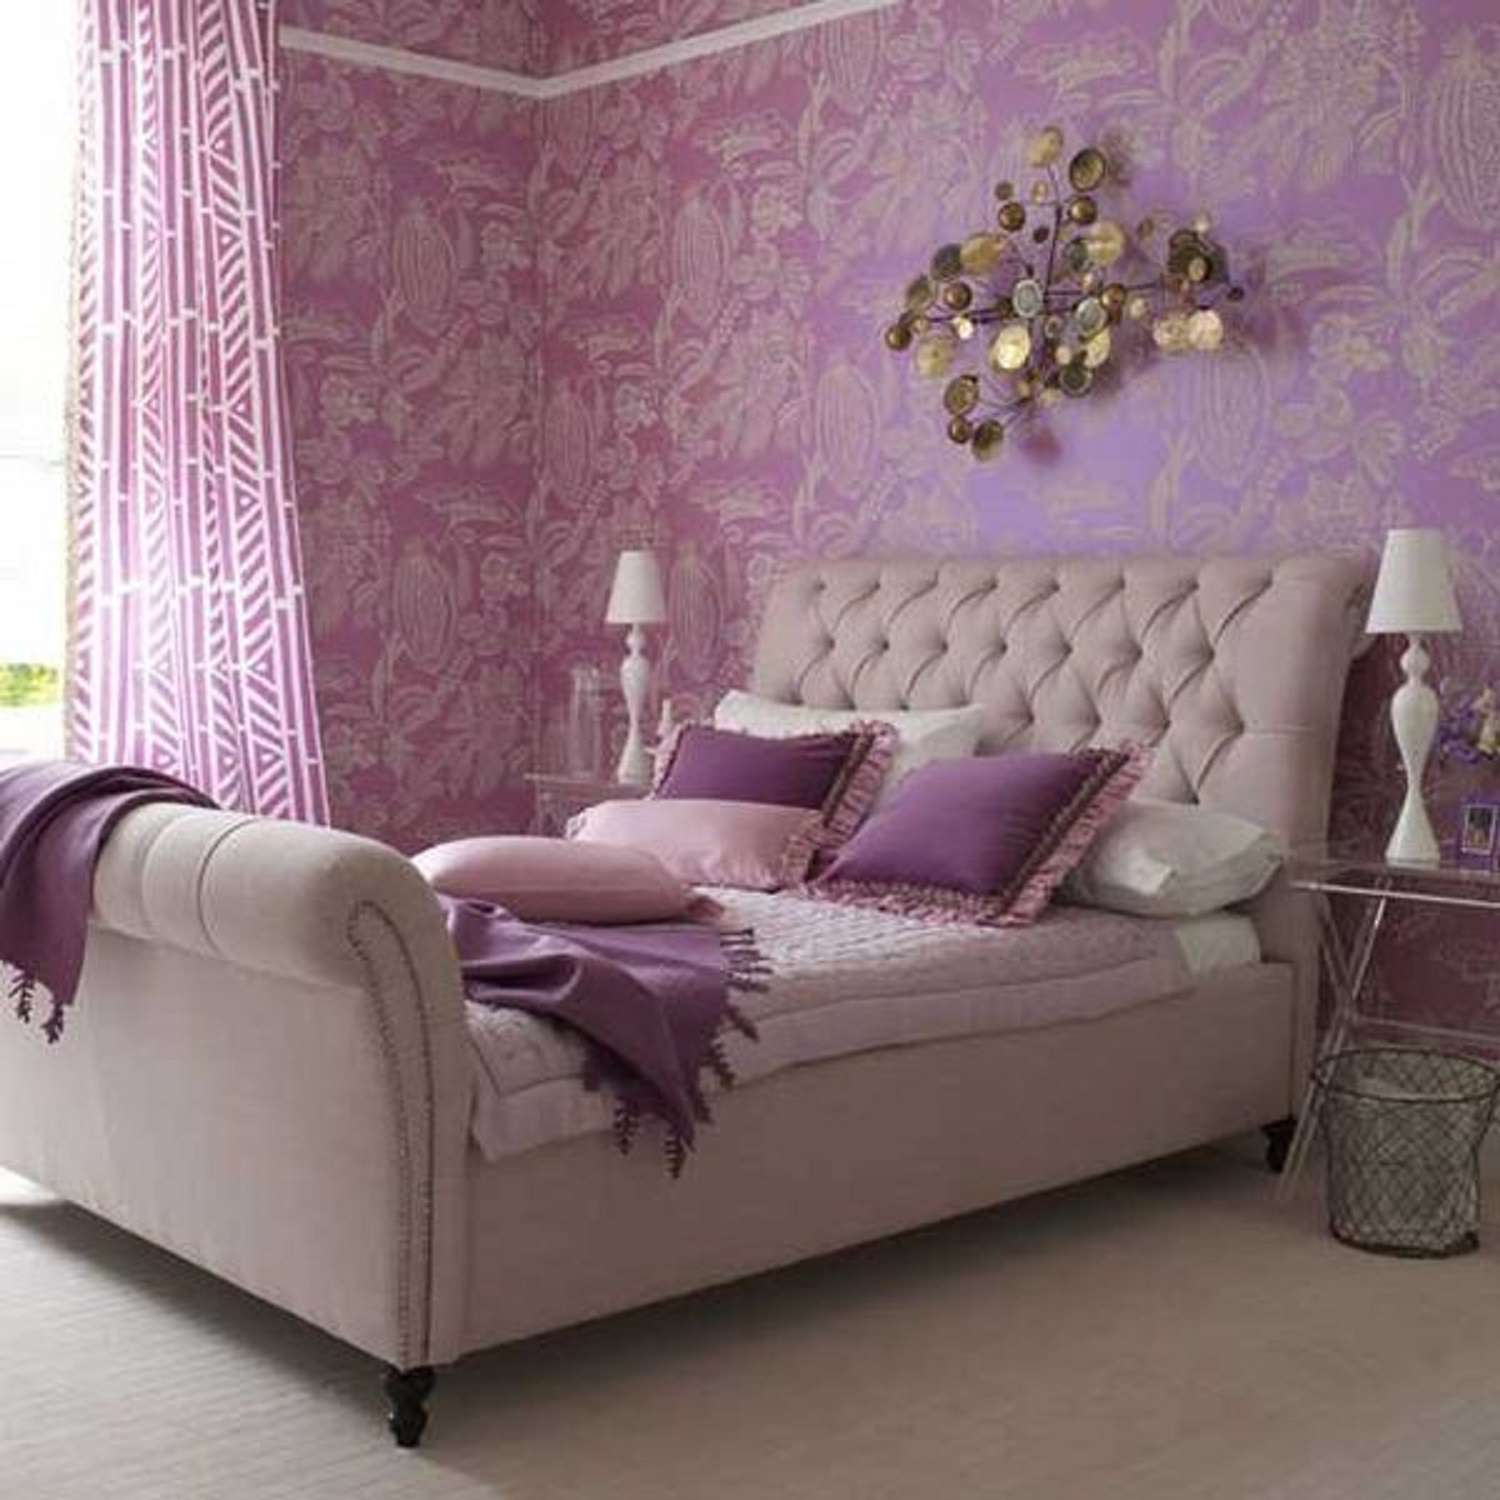 Lavendelfarbenes Schlafzimmer mit gemusterter Tapete, metallischen Akzenten und gepolstertem Bett